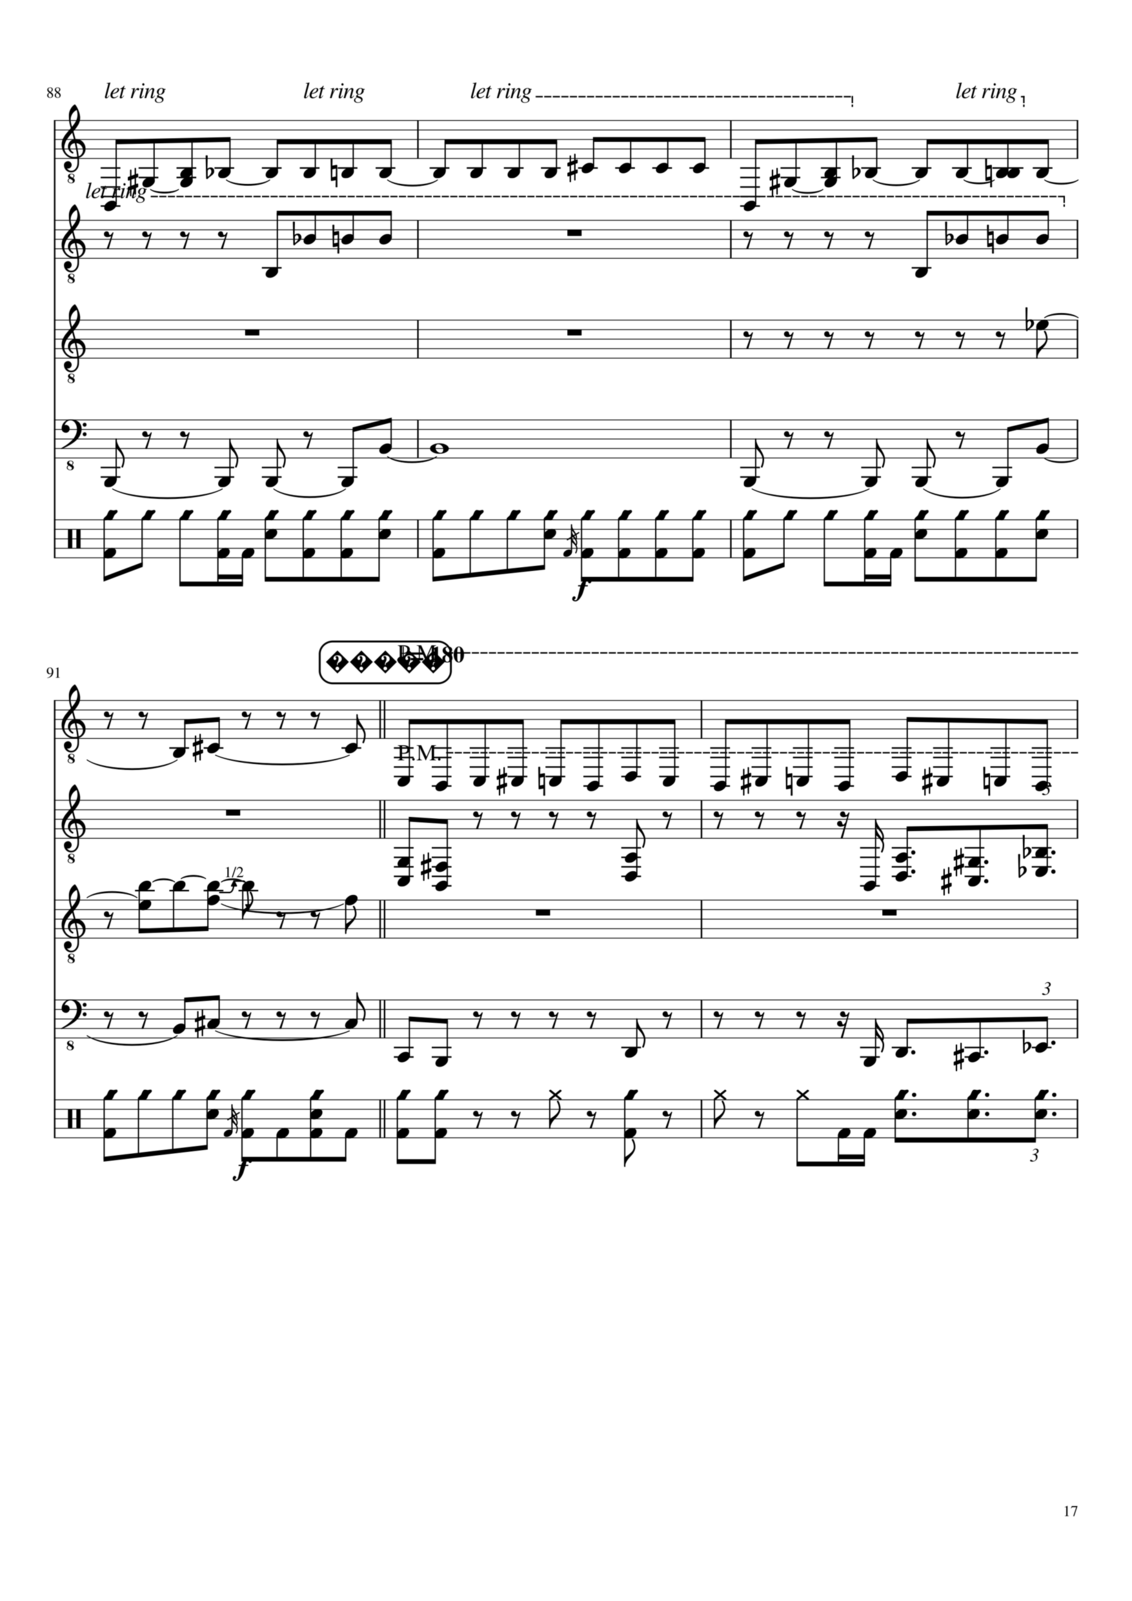 Vechnaya prizrachnaya vstrechnaya slide, Image 11